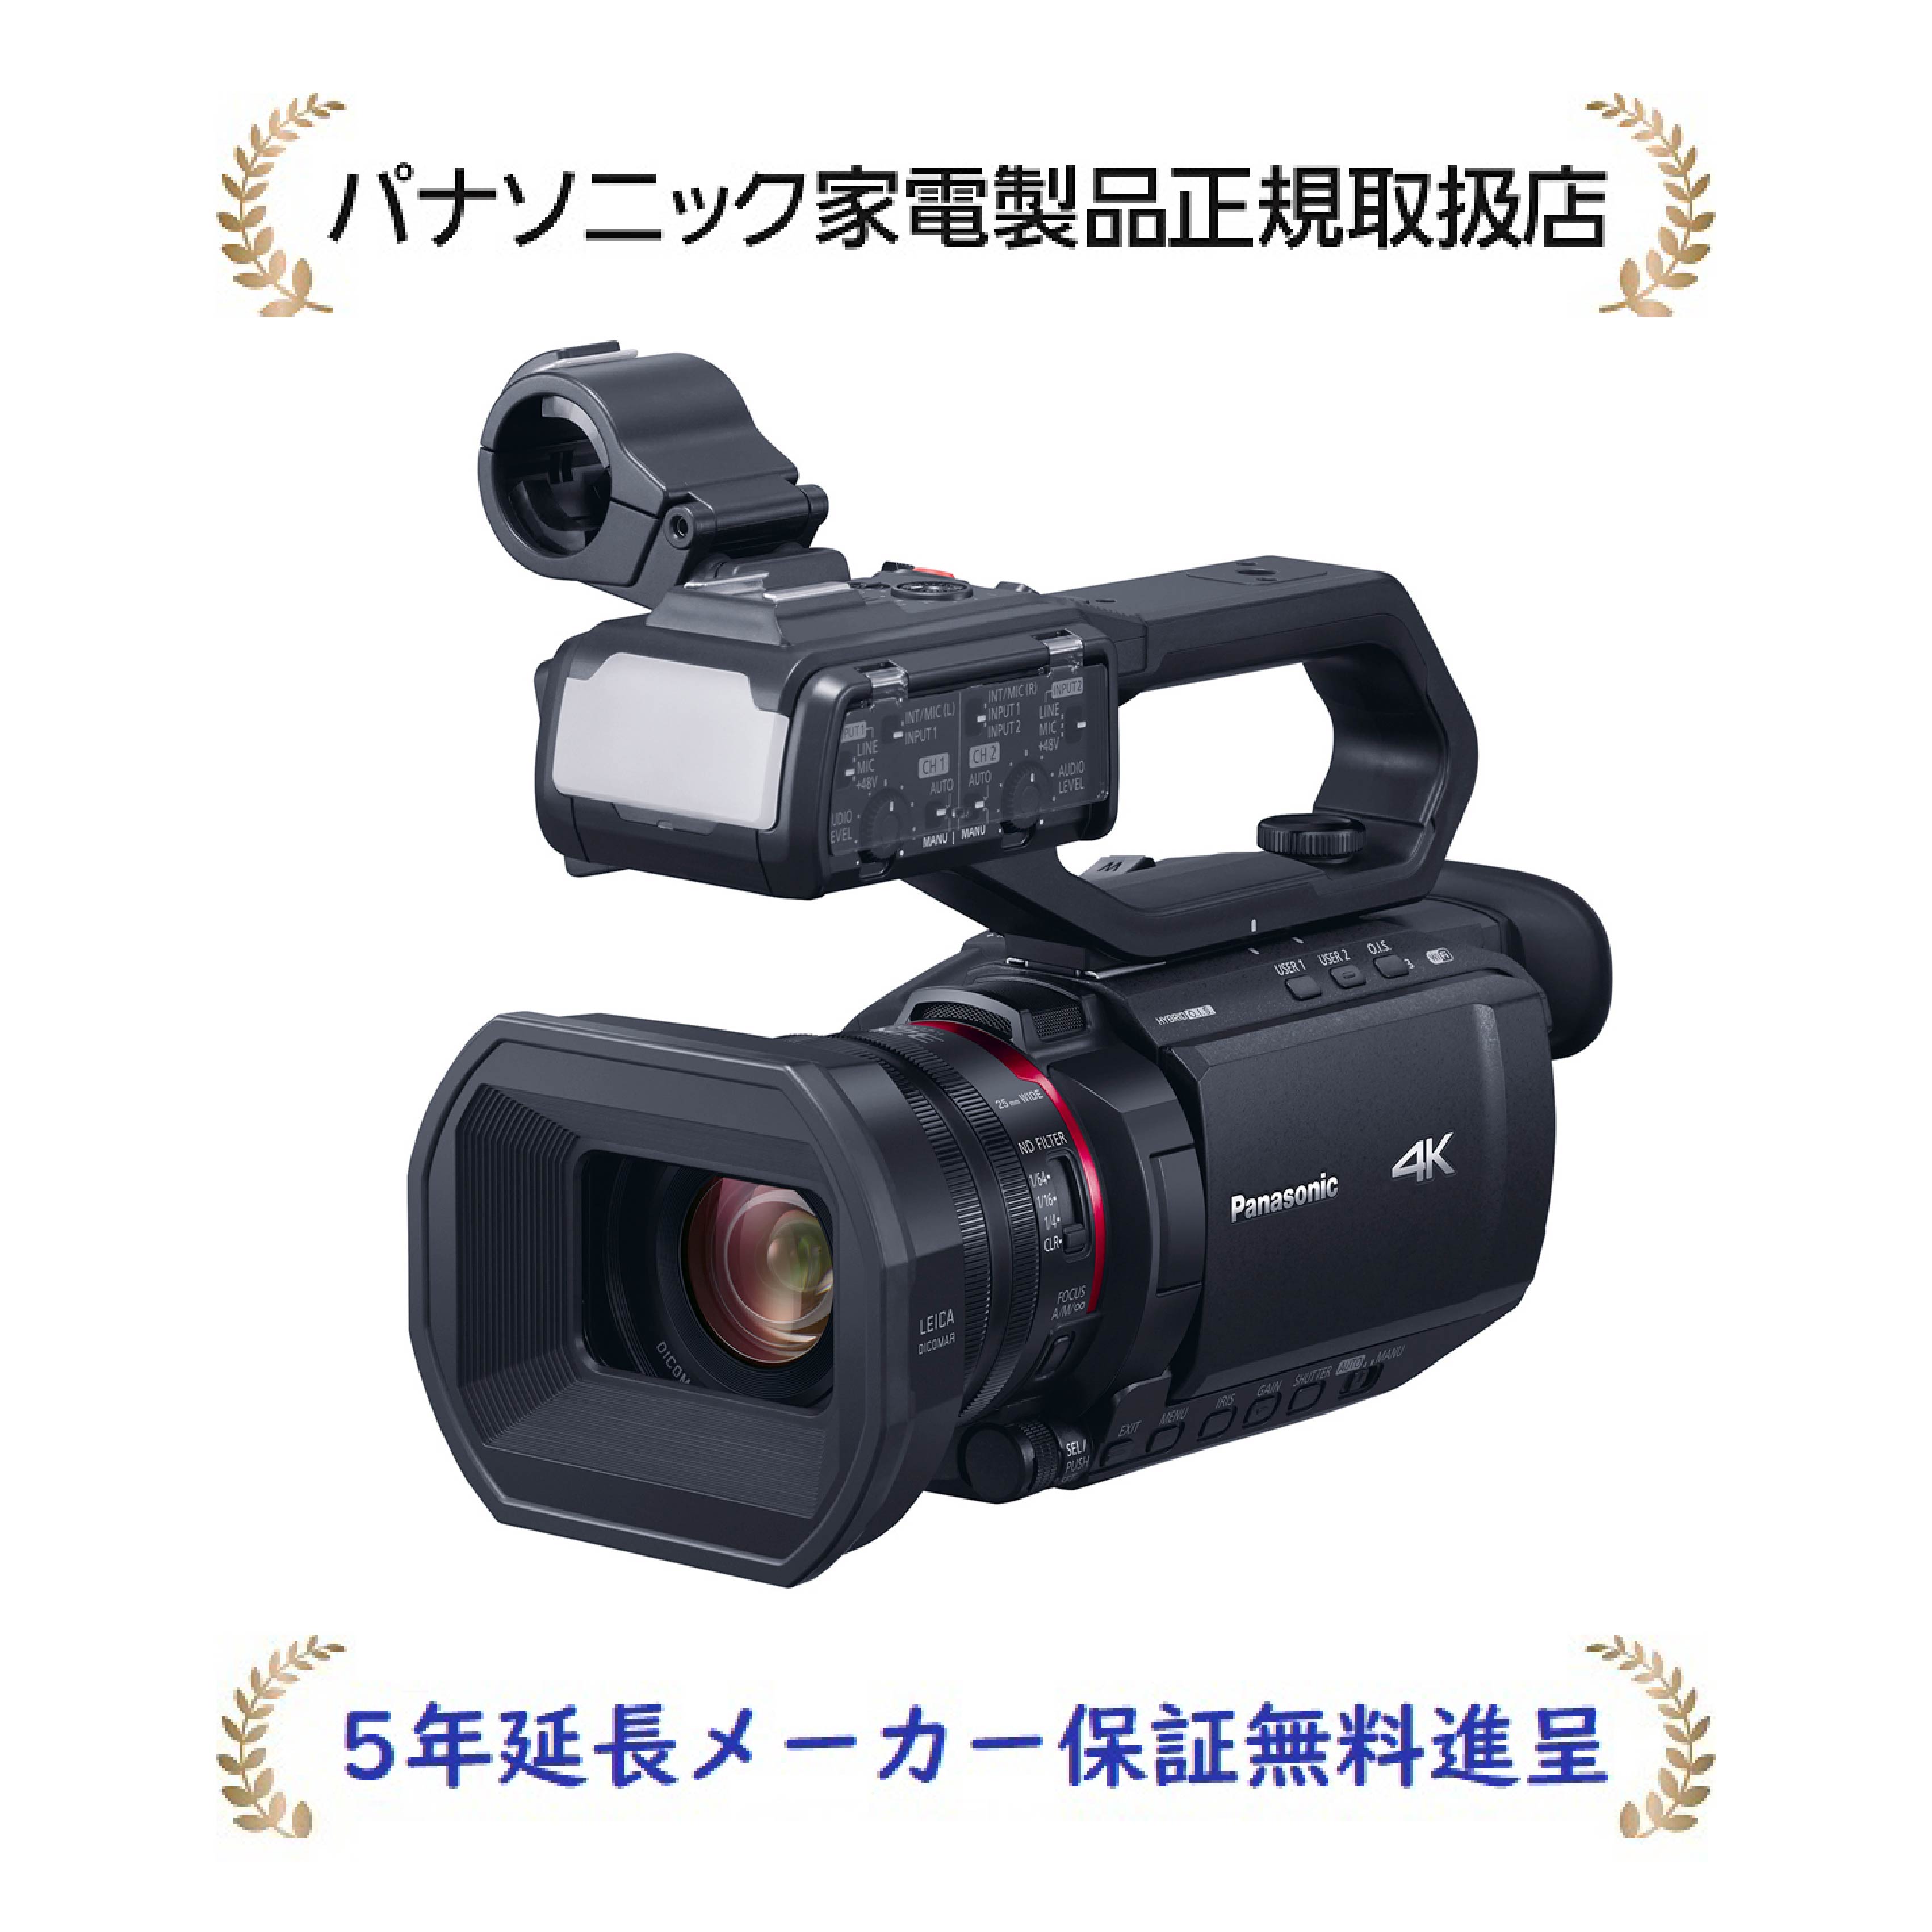 パナソニック HC-X2000-K【5年延長メーカー保証無料進呈】(HCX2000K) デジタル4Kビデオカメラ